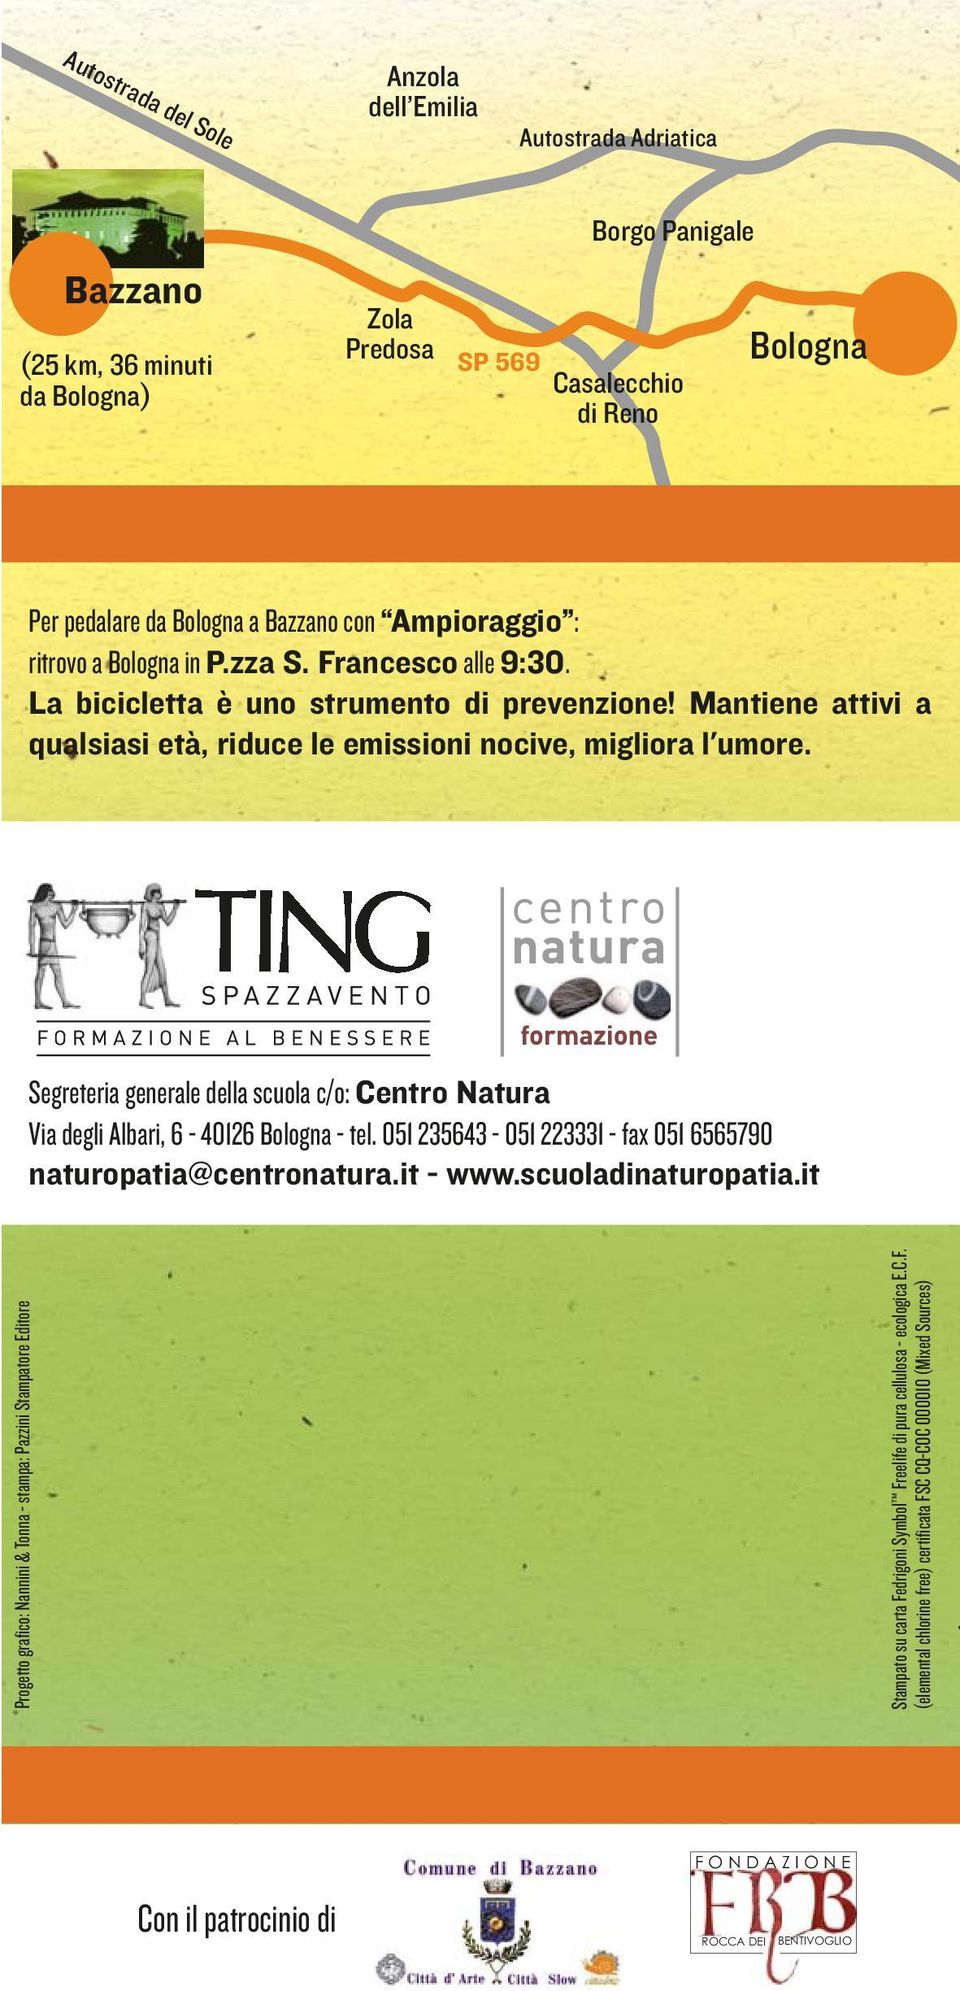 Segreteria generale della scuola c/o: Centro Natura Via degli Albari, 6-40126 Bologna - tel. 051 235643-051 223331 - fax 051 6565790 naturopatia@centronatura.it - www.scuoladinaturopatia.